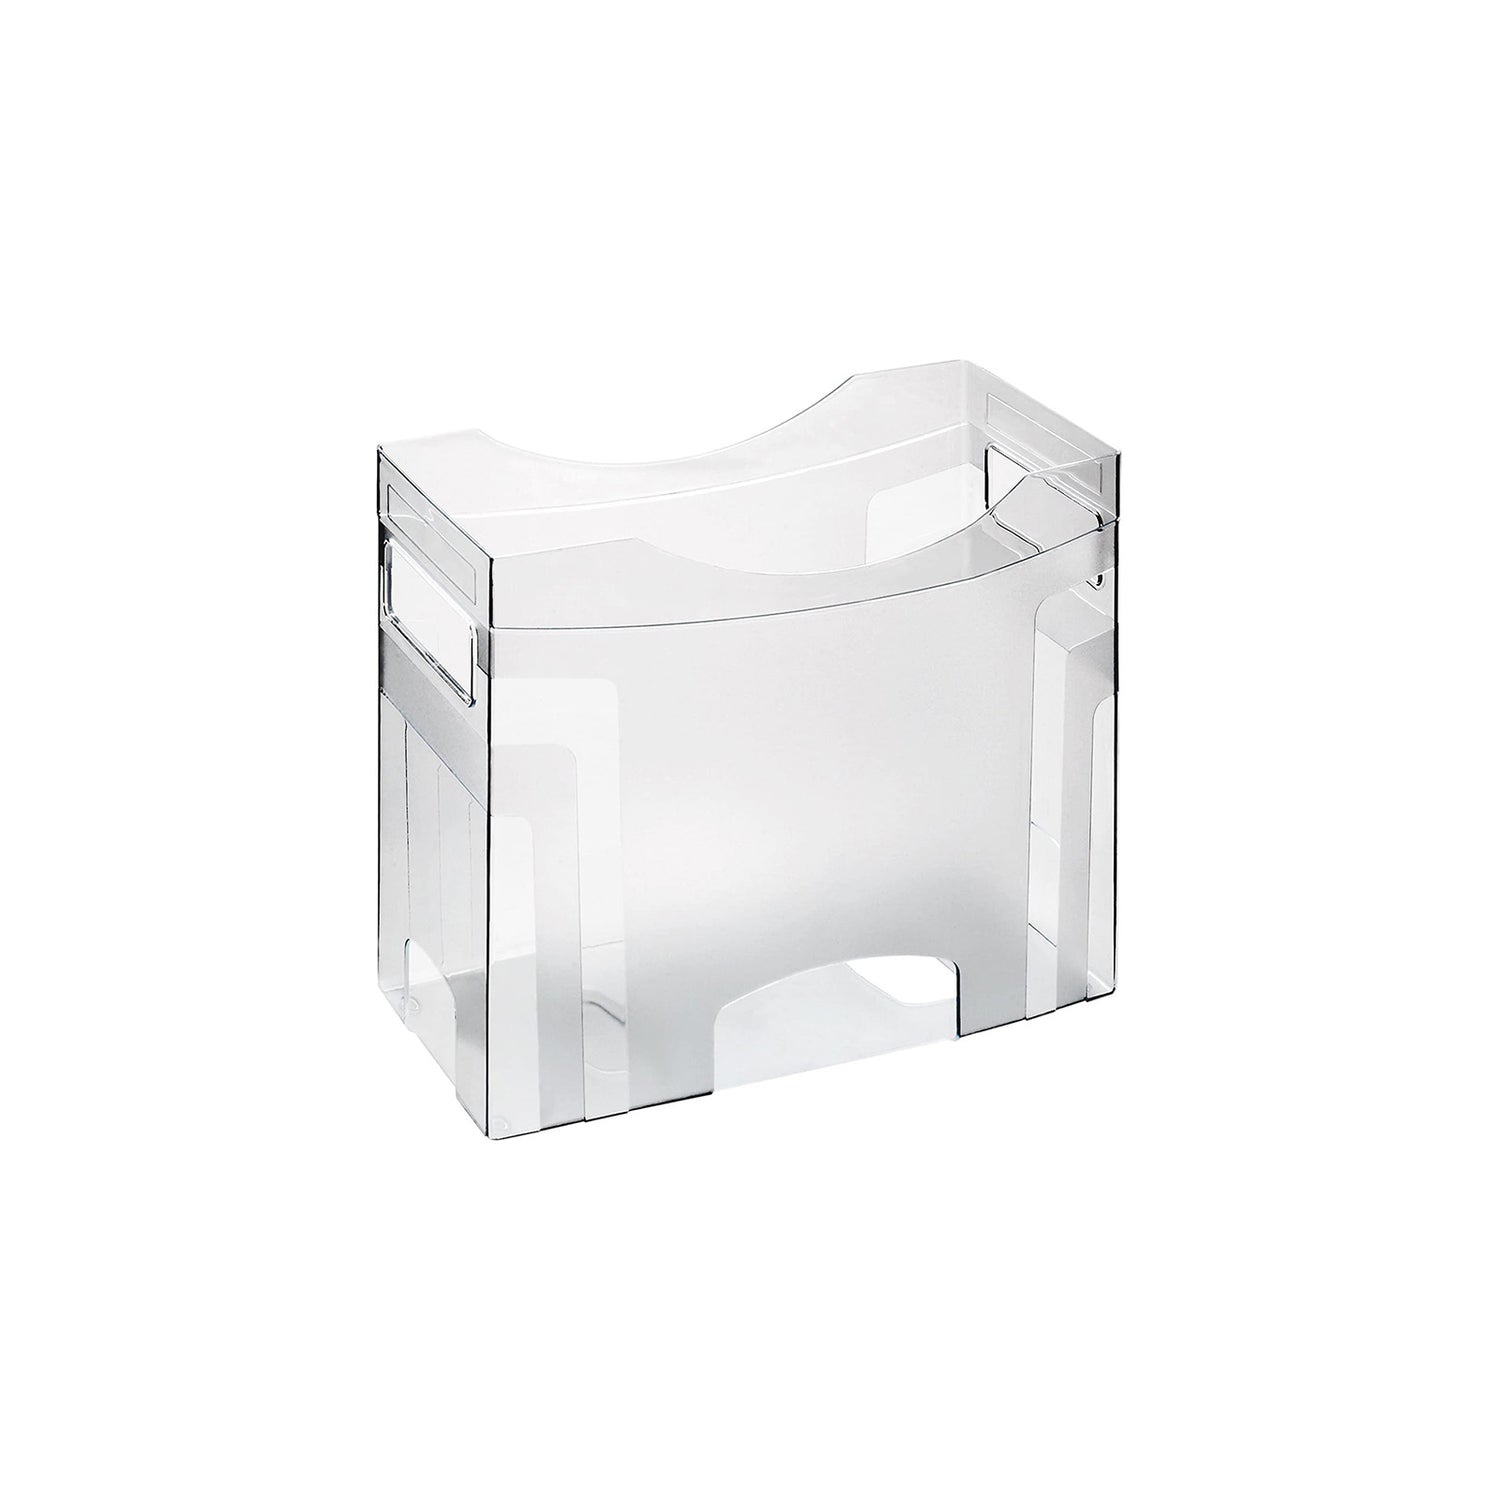 Suspension file box Cube